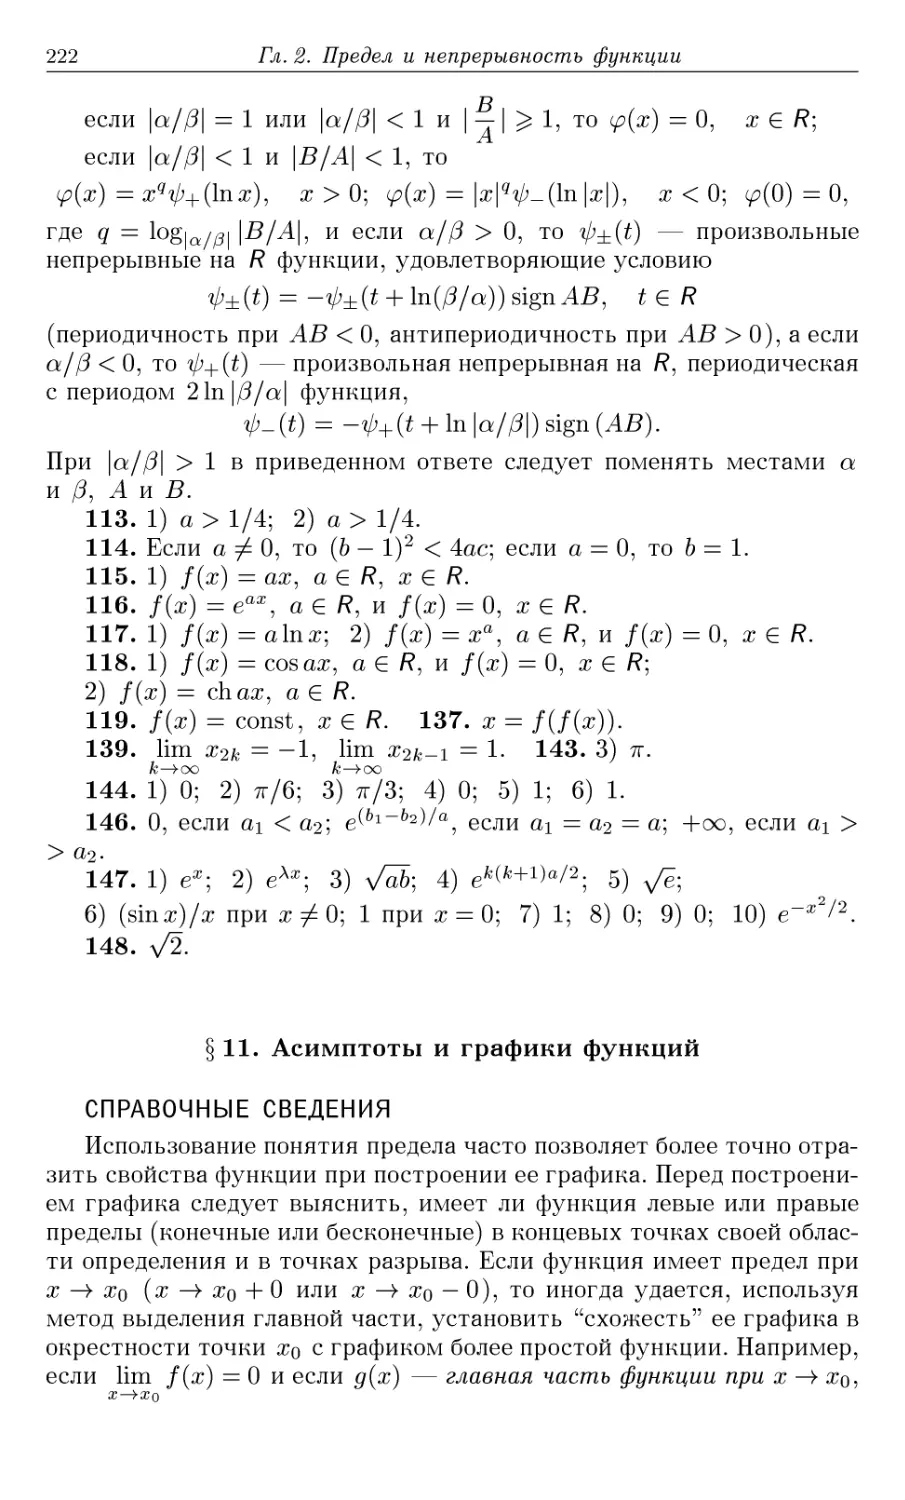 §11. Асимптоты и графики функций